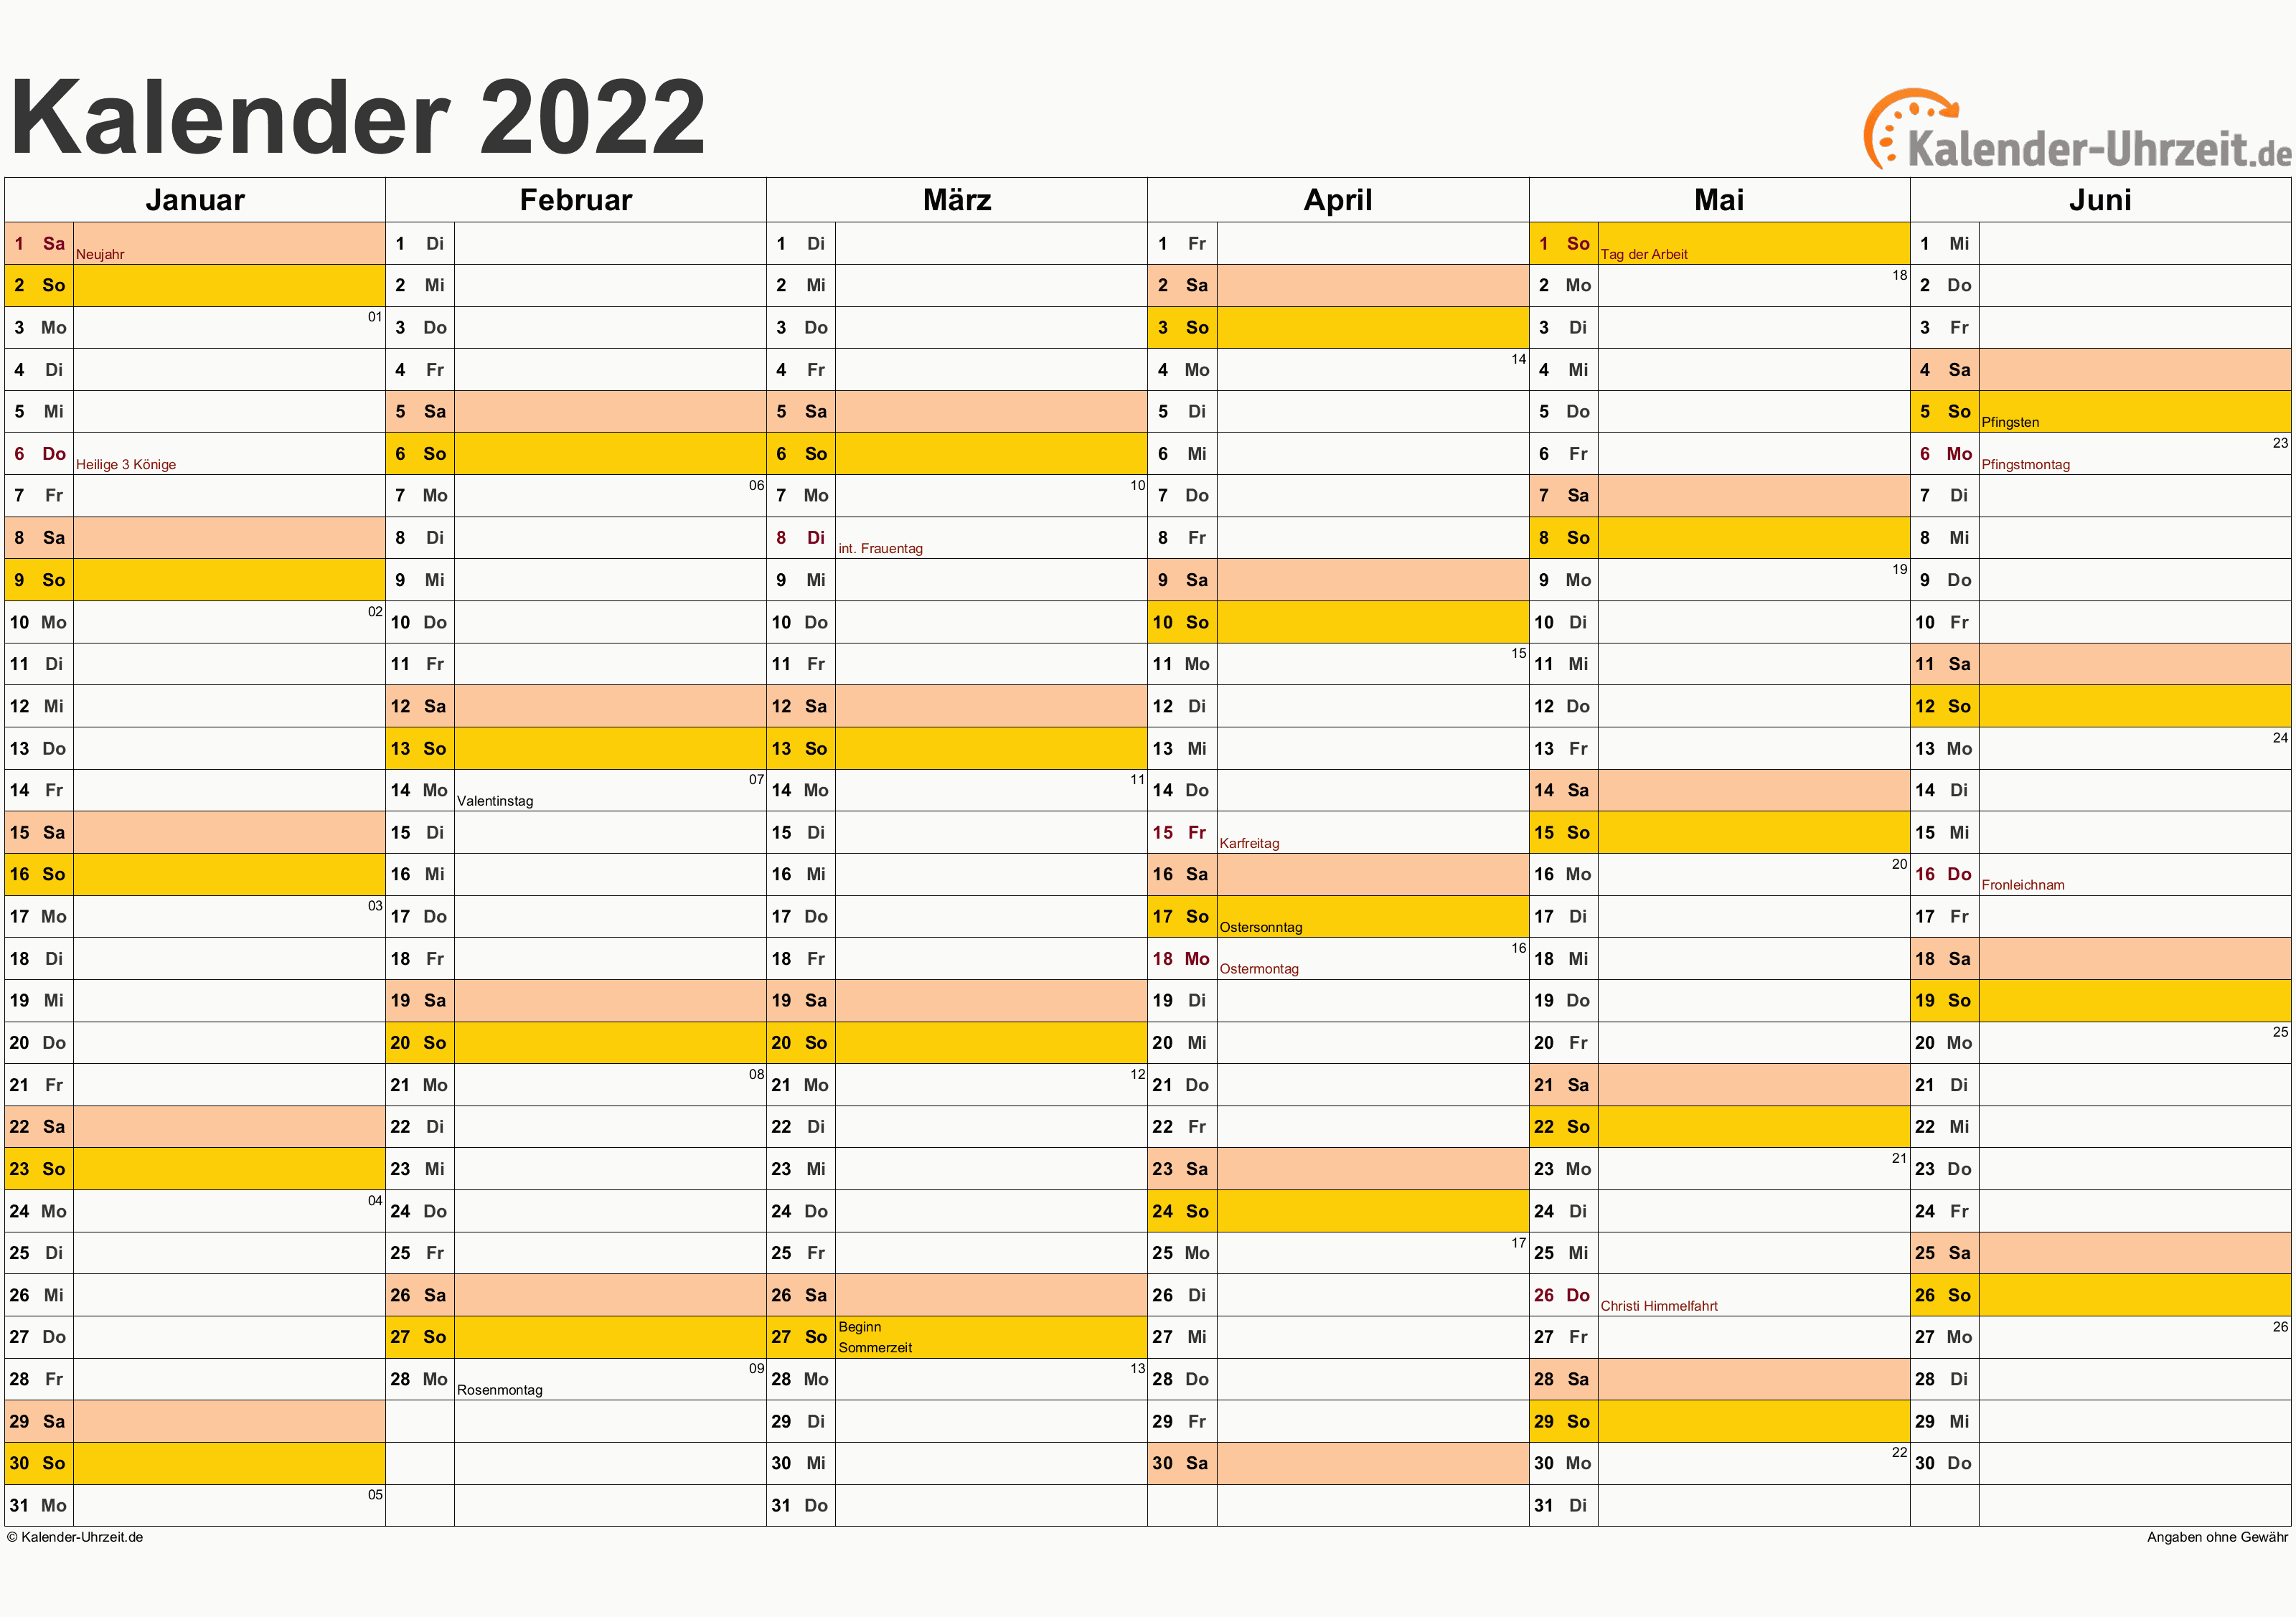 Kalender 2022 nrw kostenlos